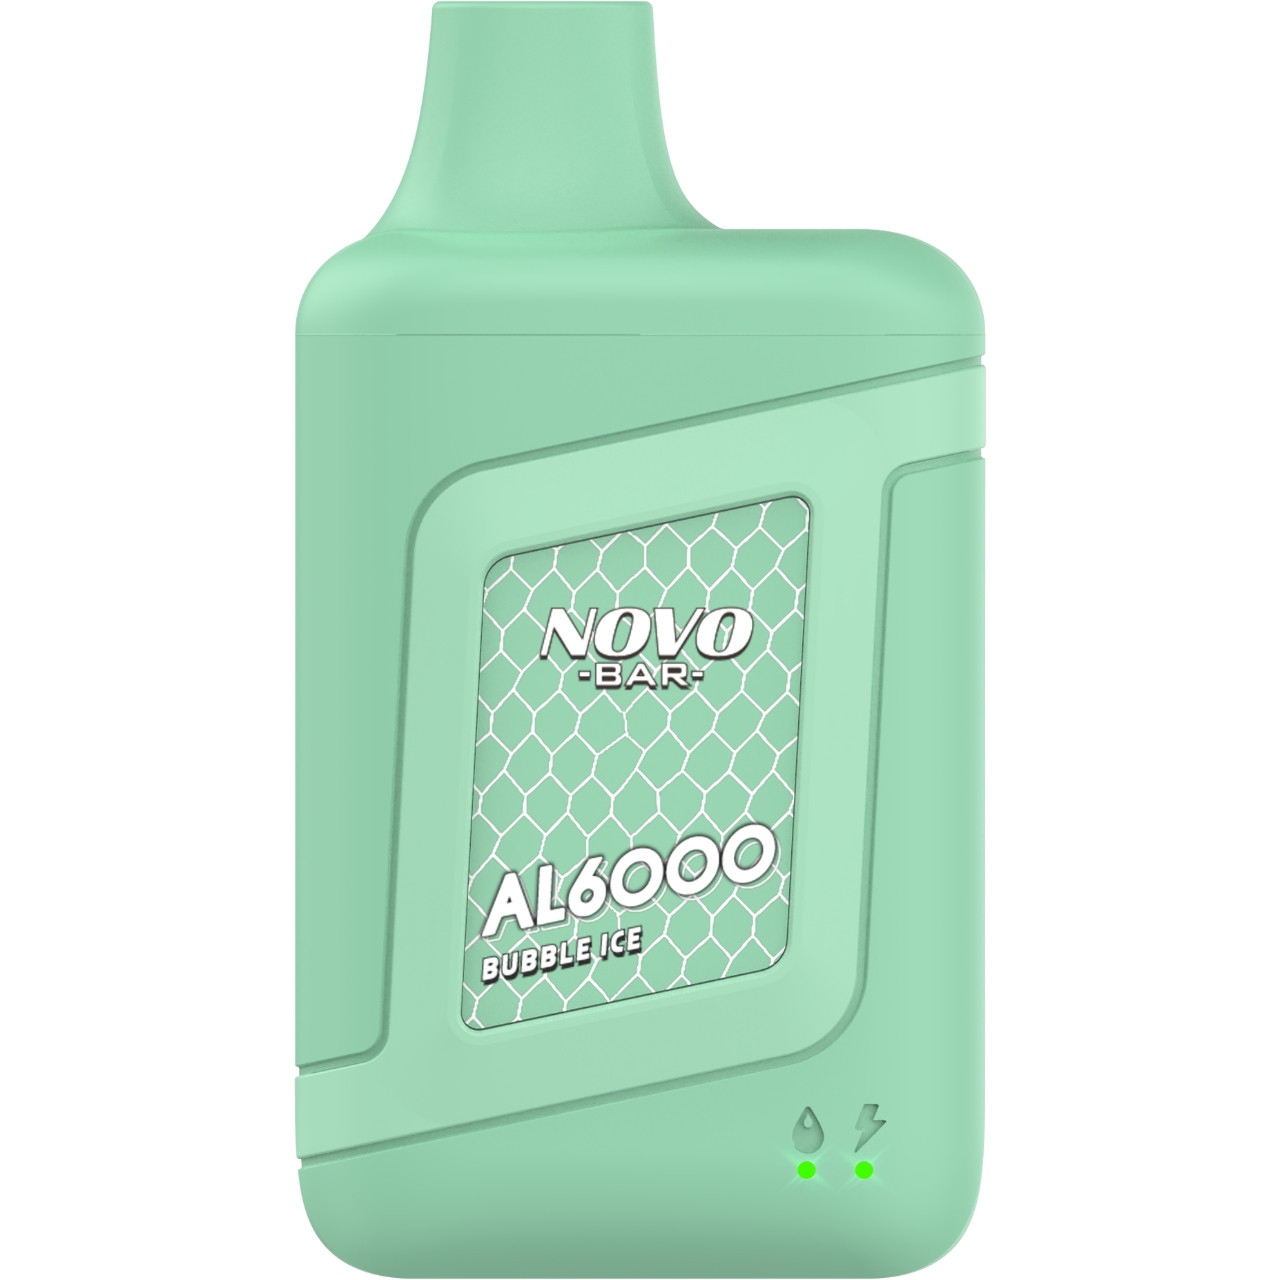 SMOK NOVO Bar AL6000 Disposable Device (6000 Puffs) -Bubble ice